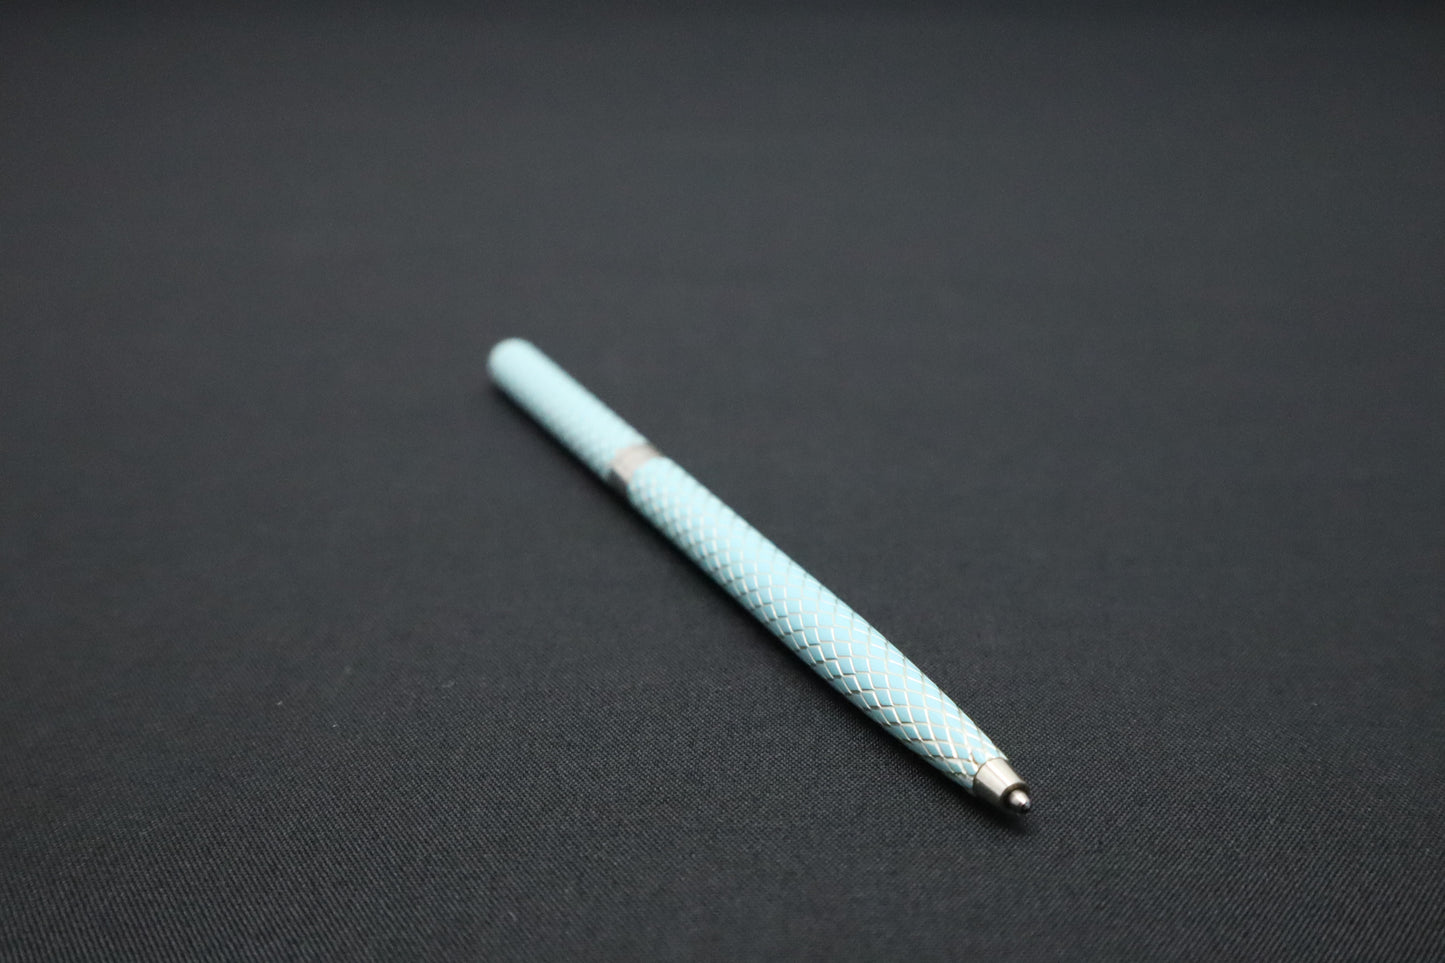 Tiffany & Co. Pen in Tiffany Blue & Sterling Silver